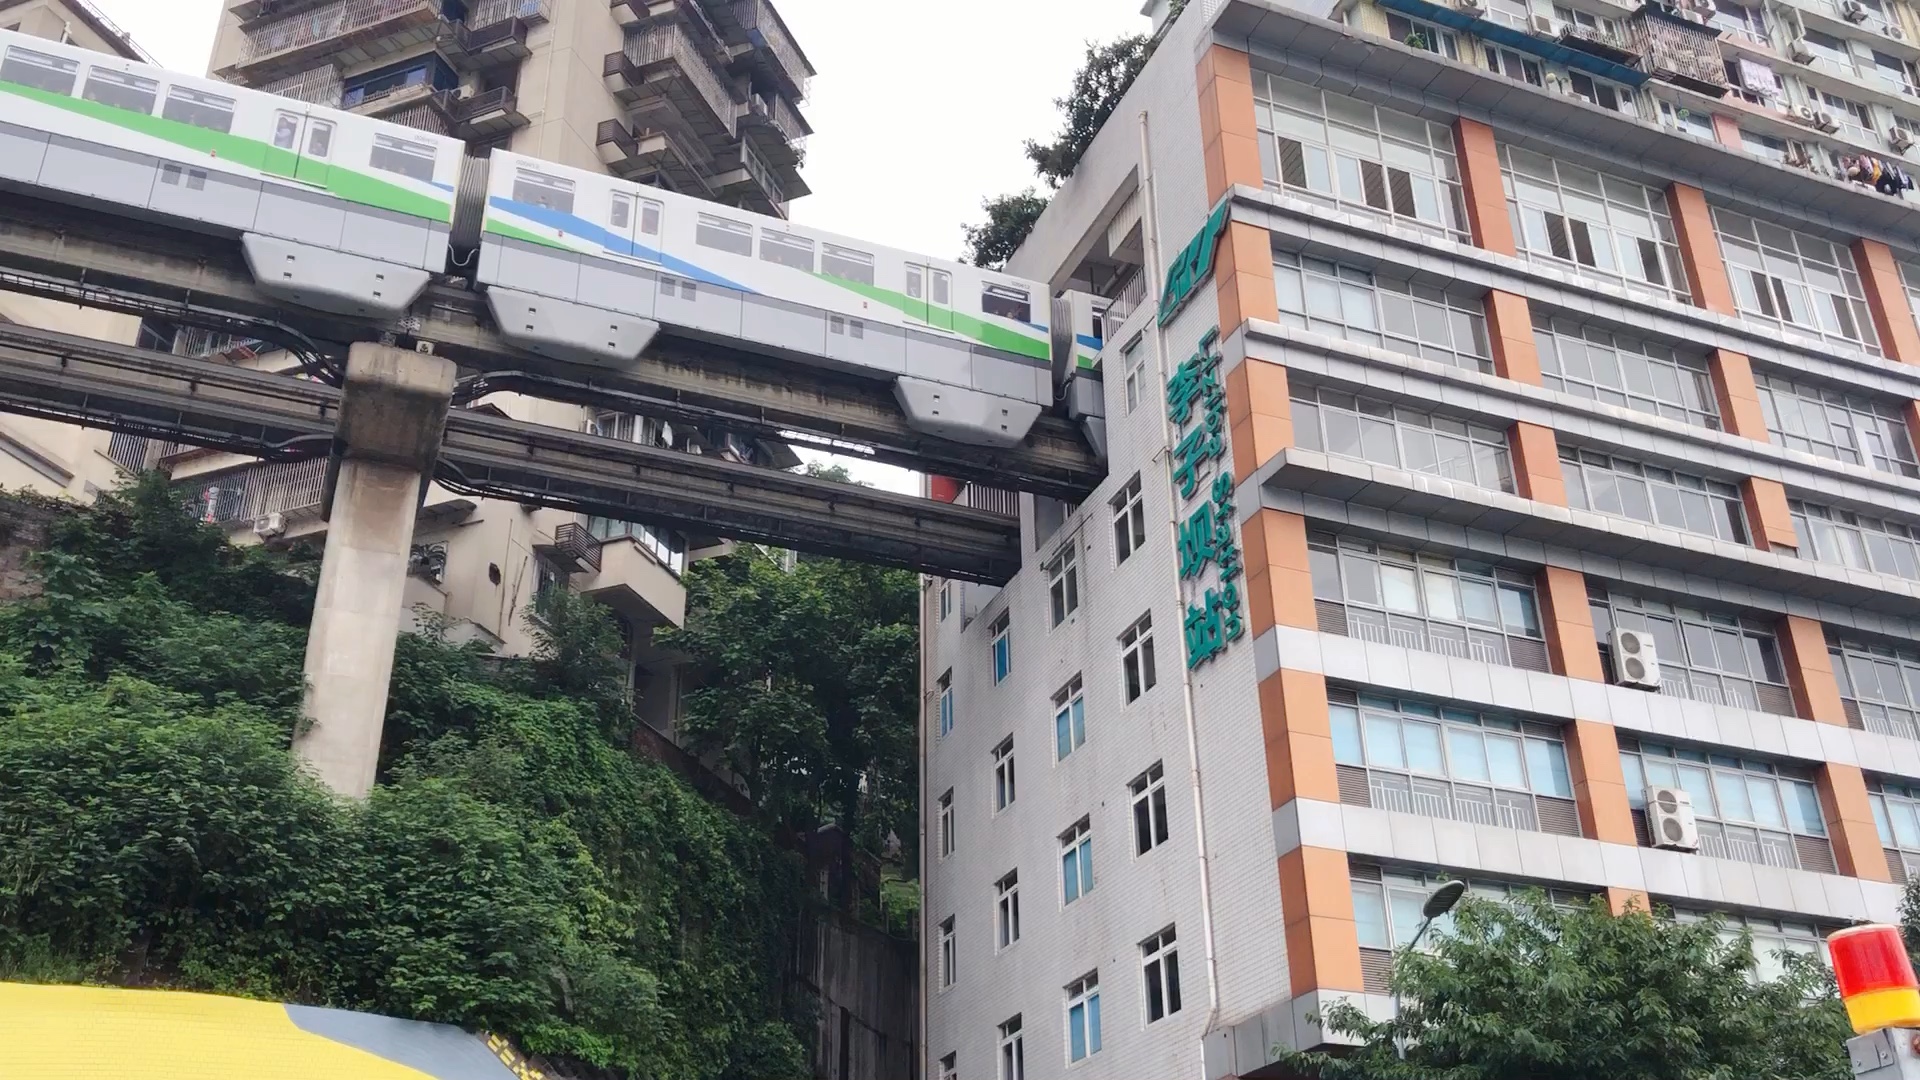 重庆网红轻轨 穿越居民楼、跨楼顶等精彩瞬间